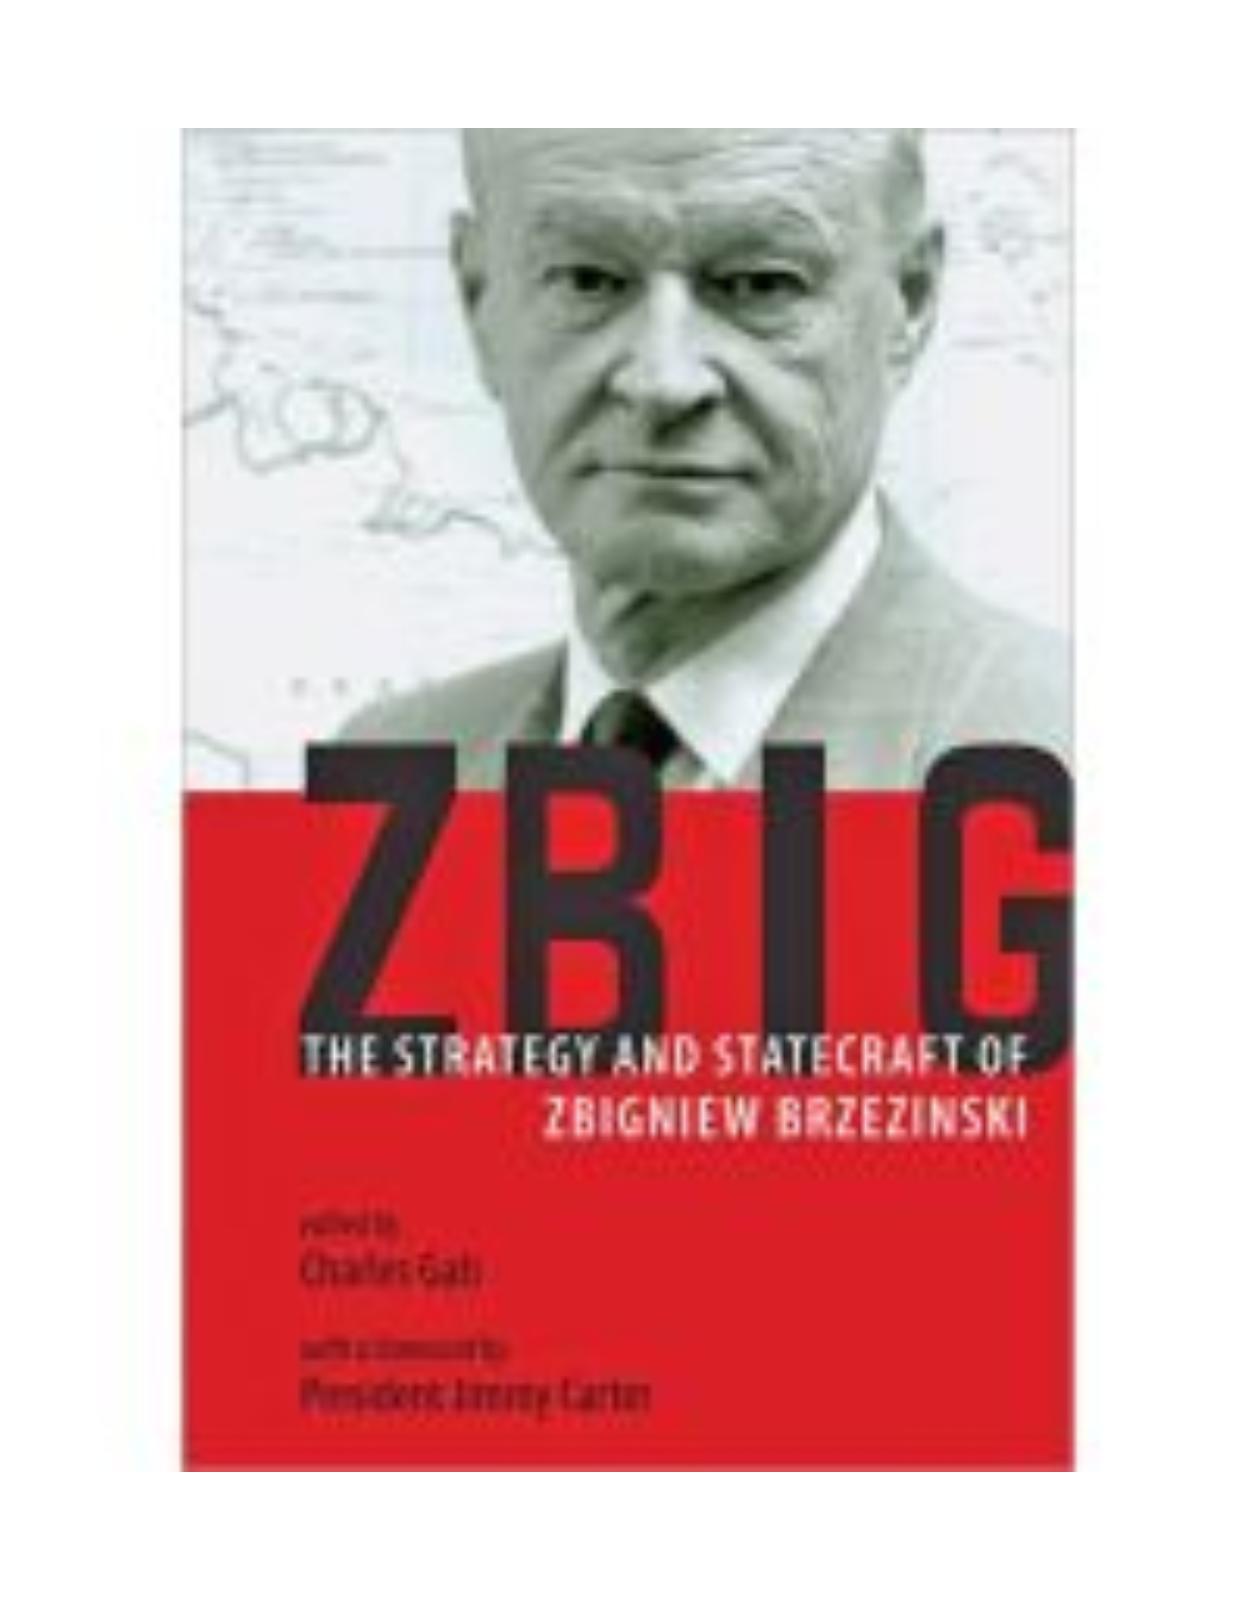 Zbig. The Strategy and Statecraft of Zbigniew Brzezinski